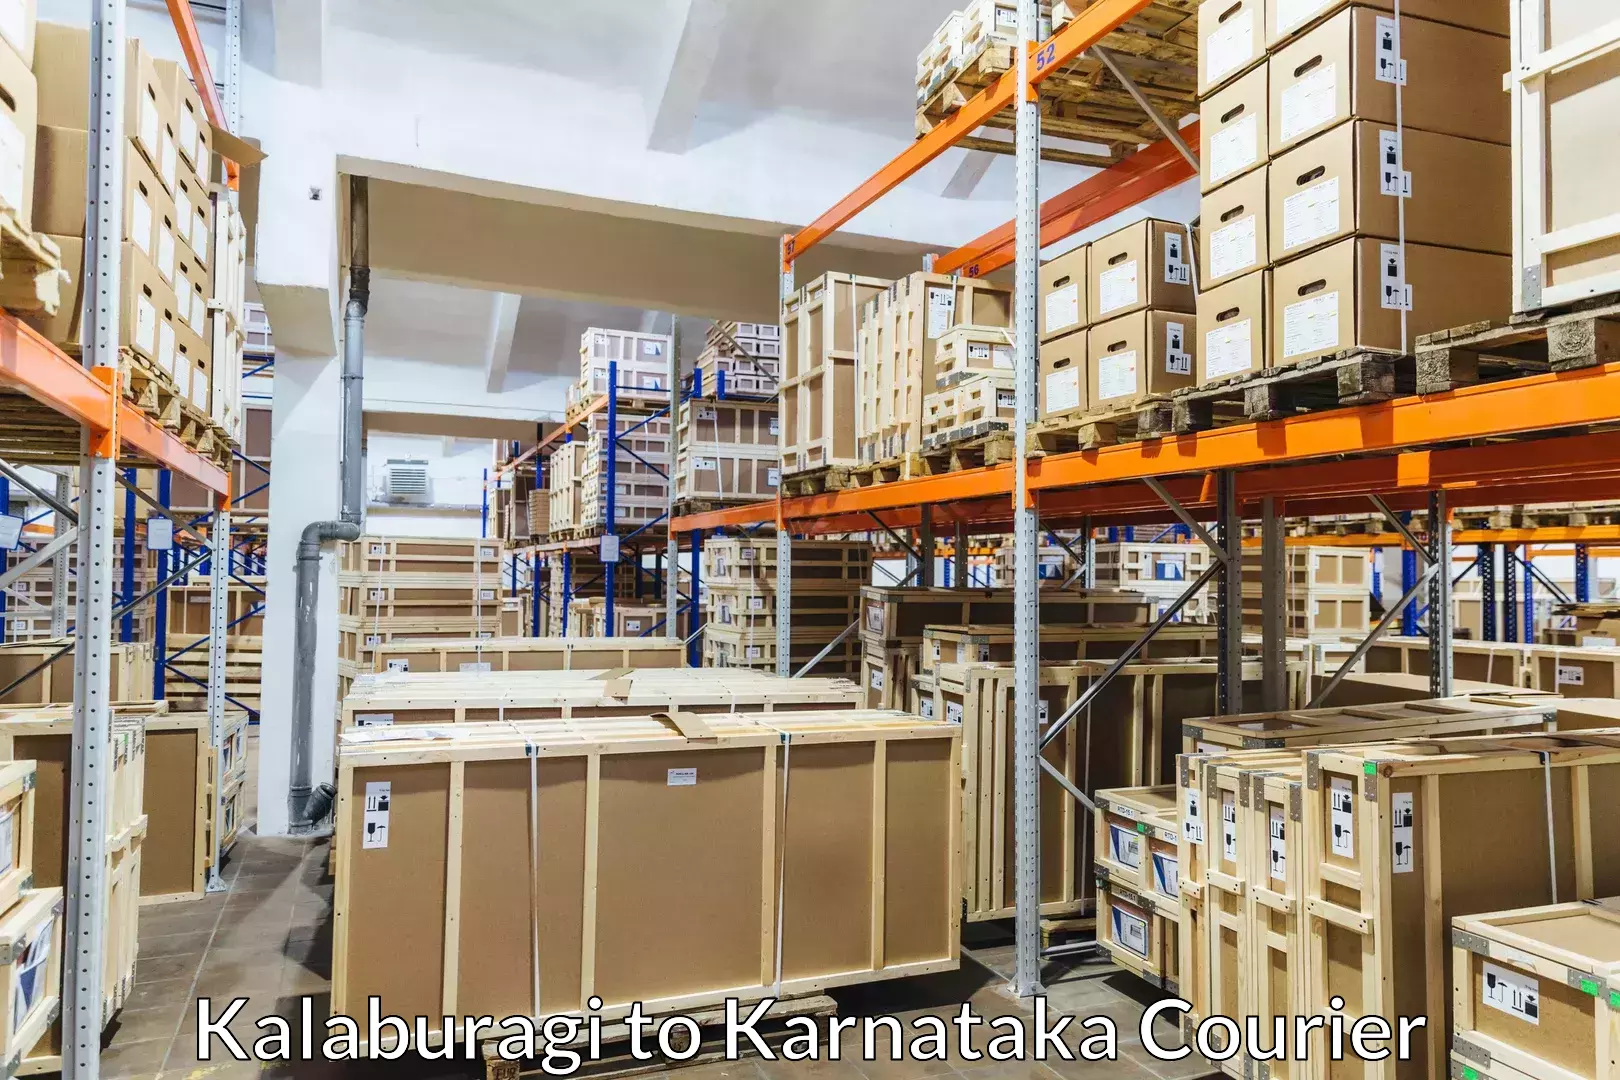 Luggage delivery system Kalaburagi to Ankola